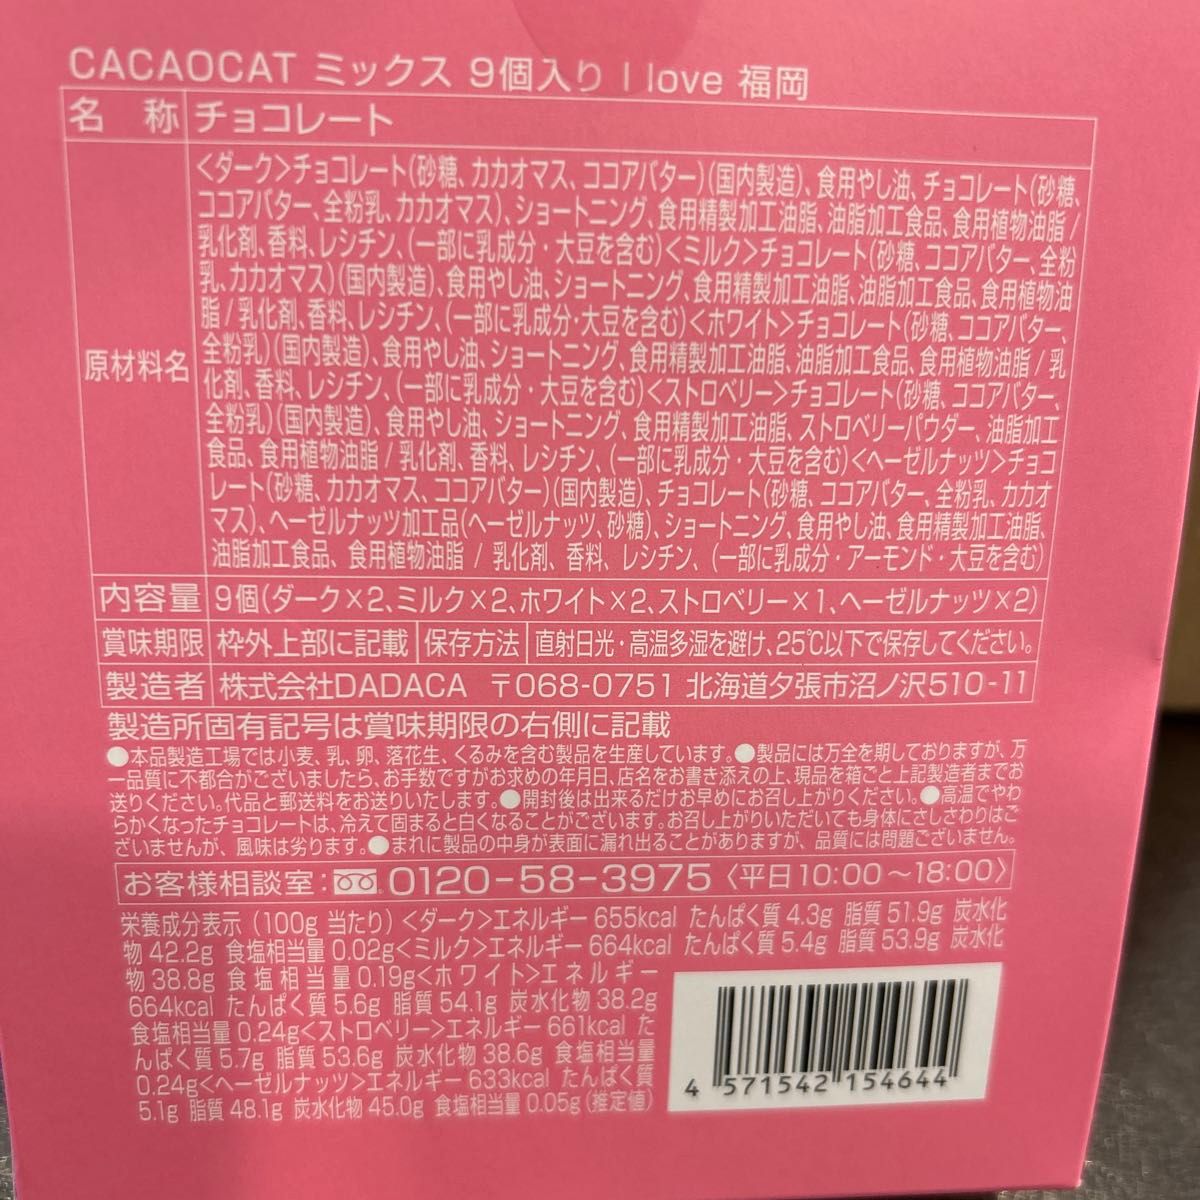 【カカオキャット】CACAO CAT/福岡限定★ミックス9個入